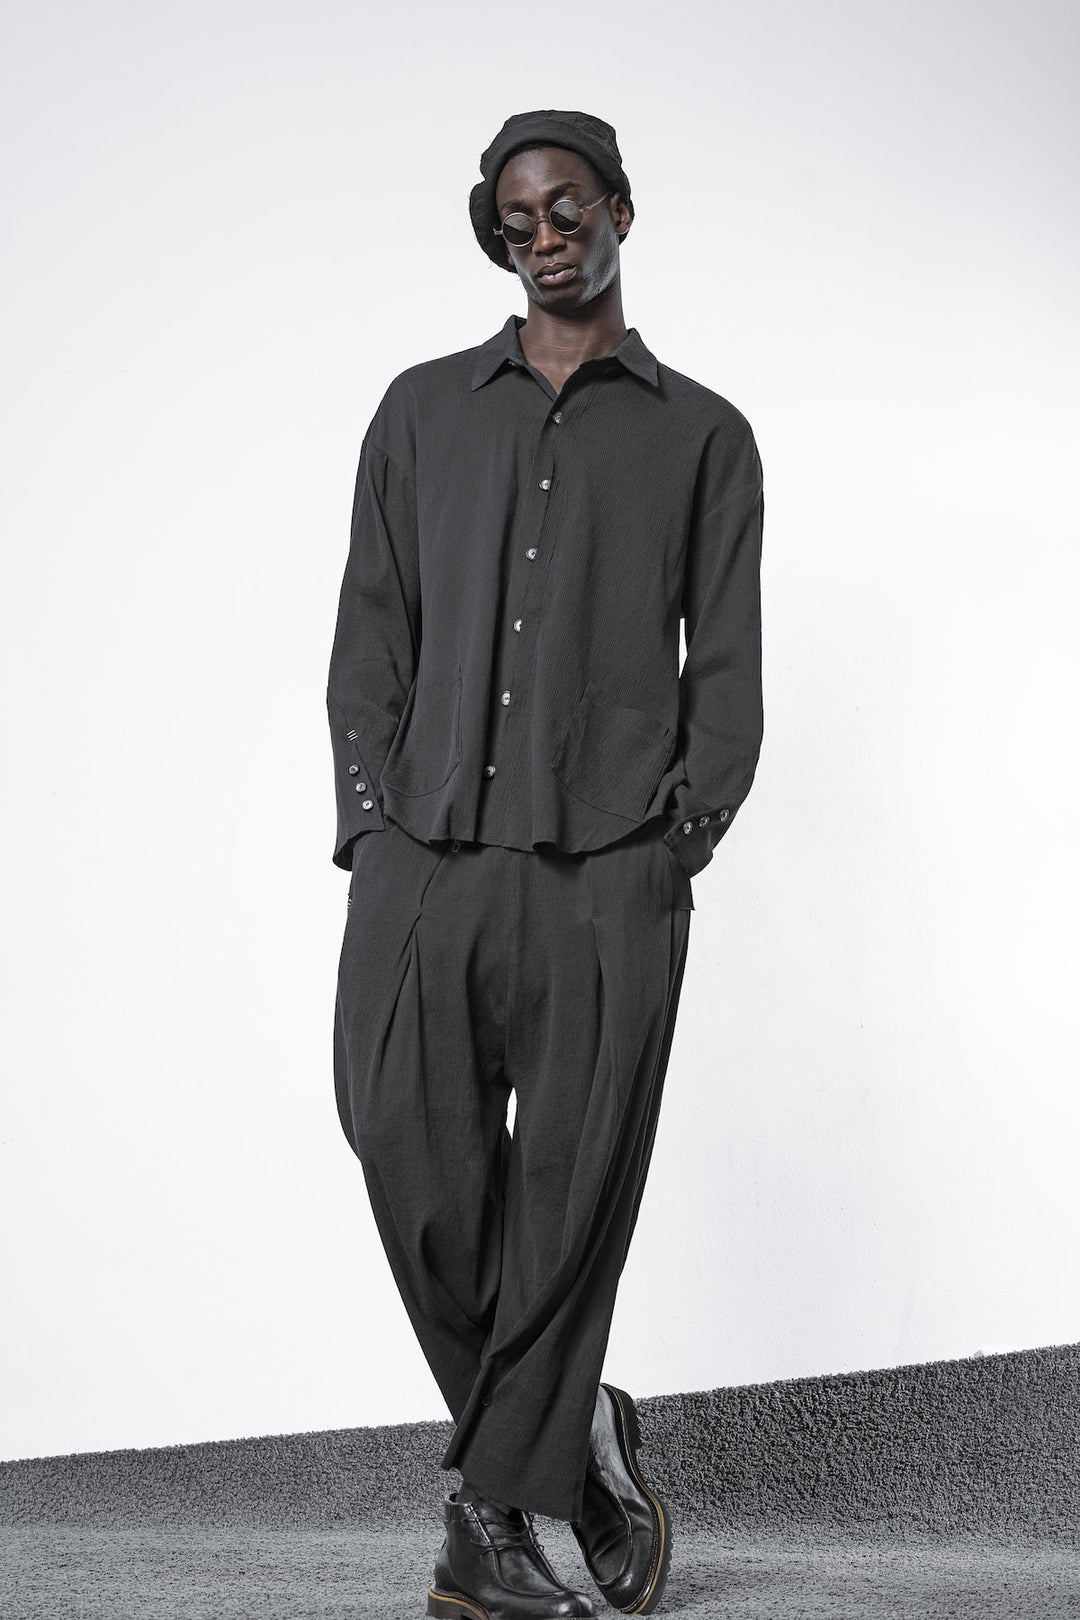 All black outfits for men in dark avant-garde aesthetics